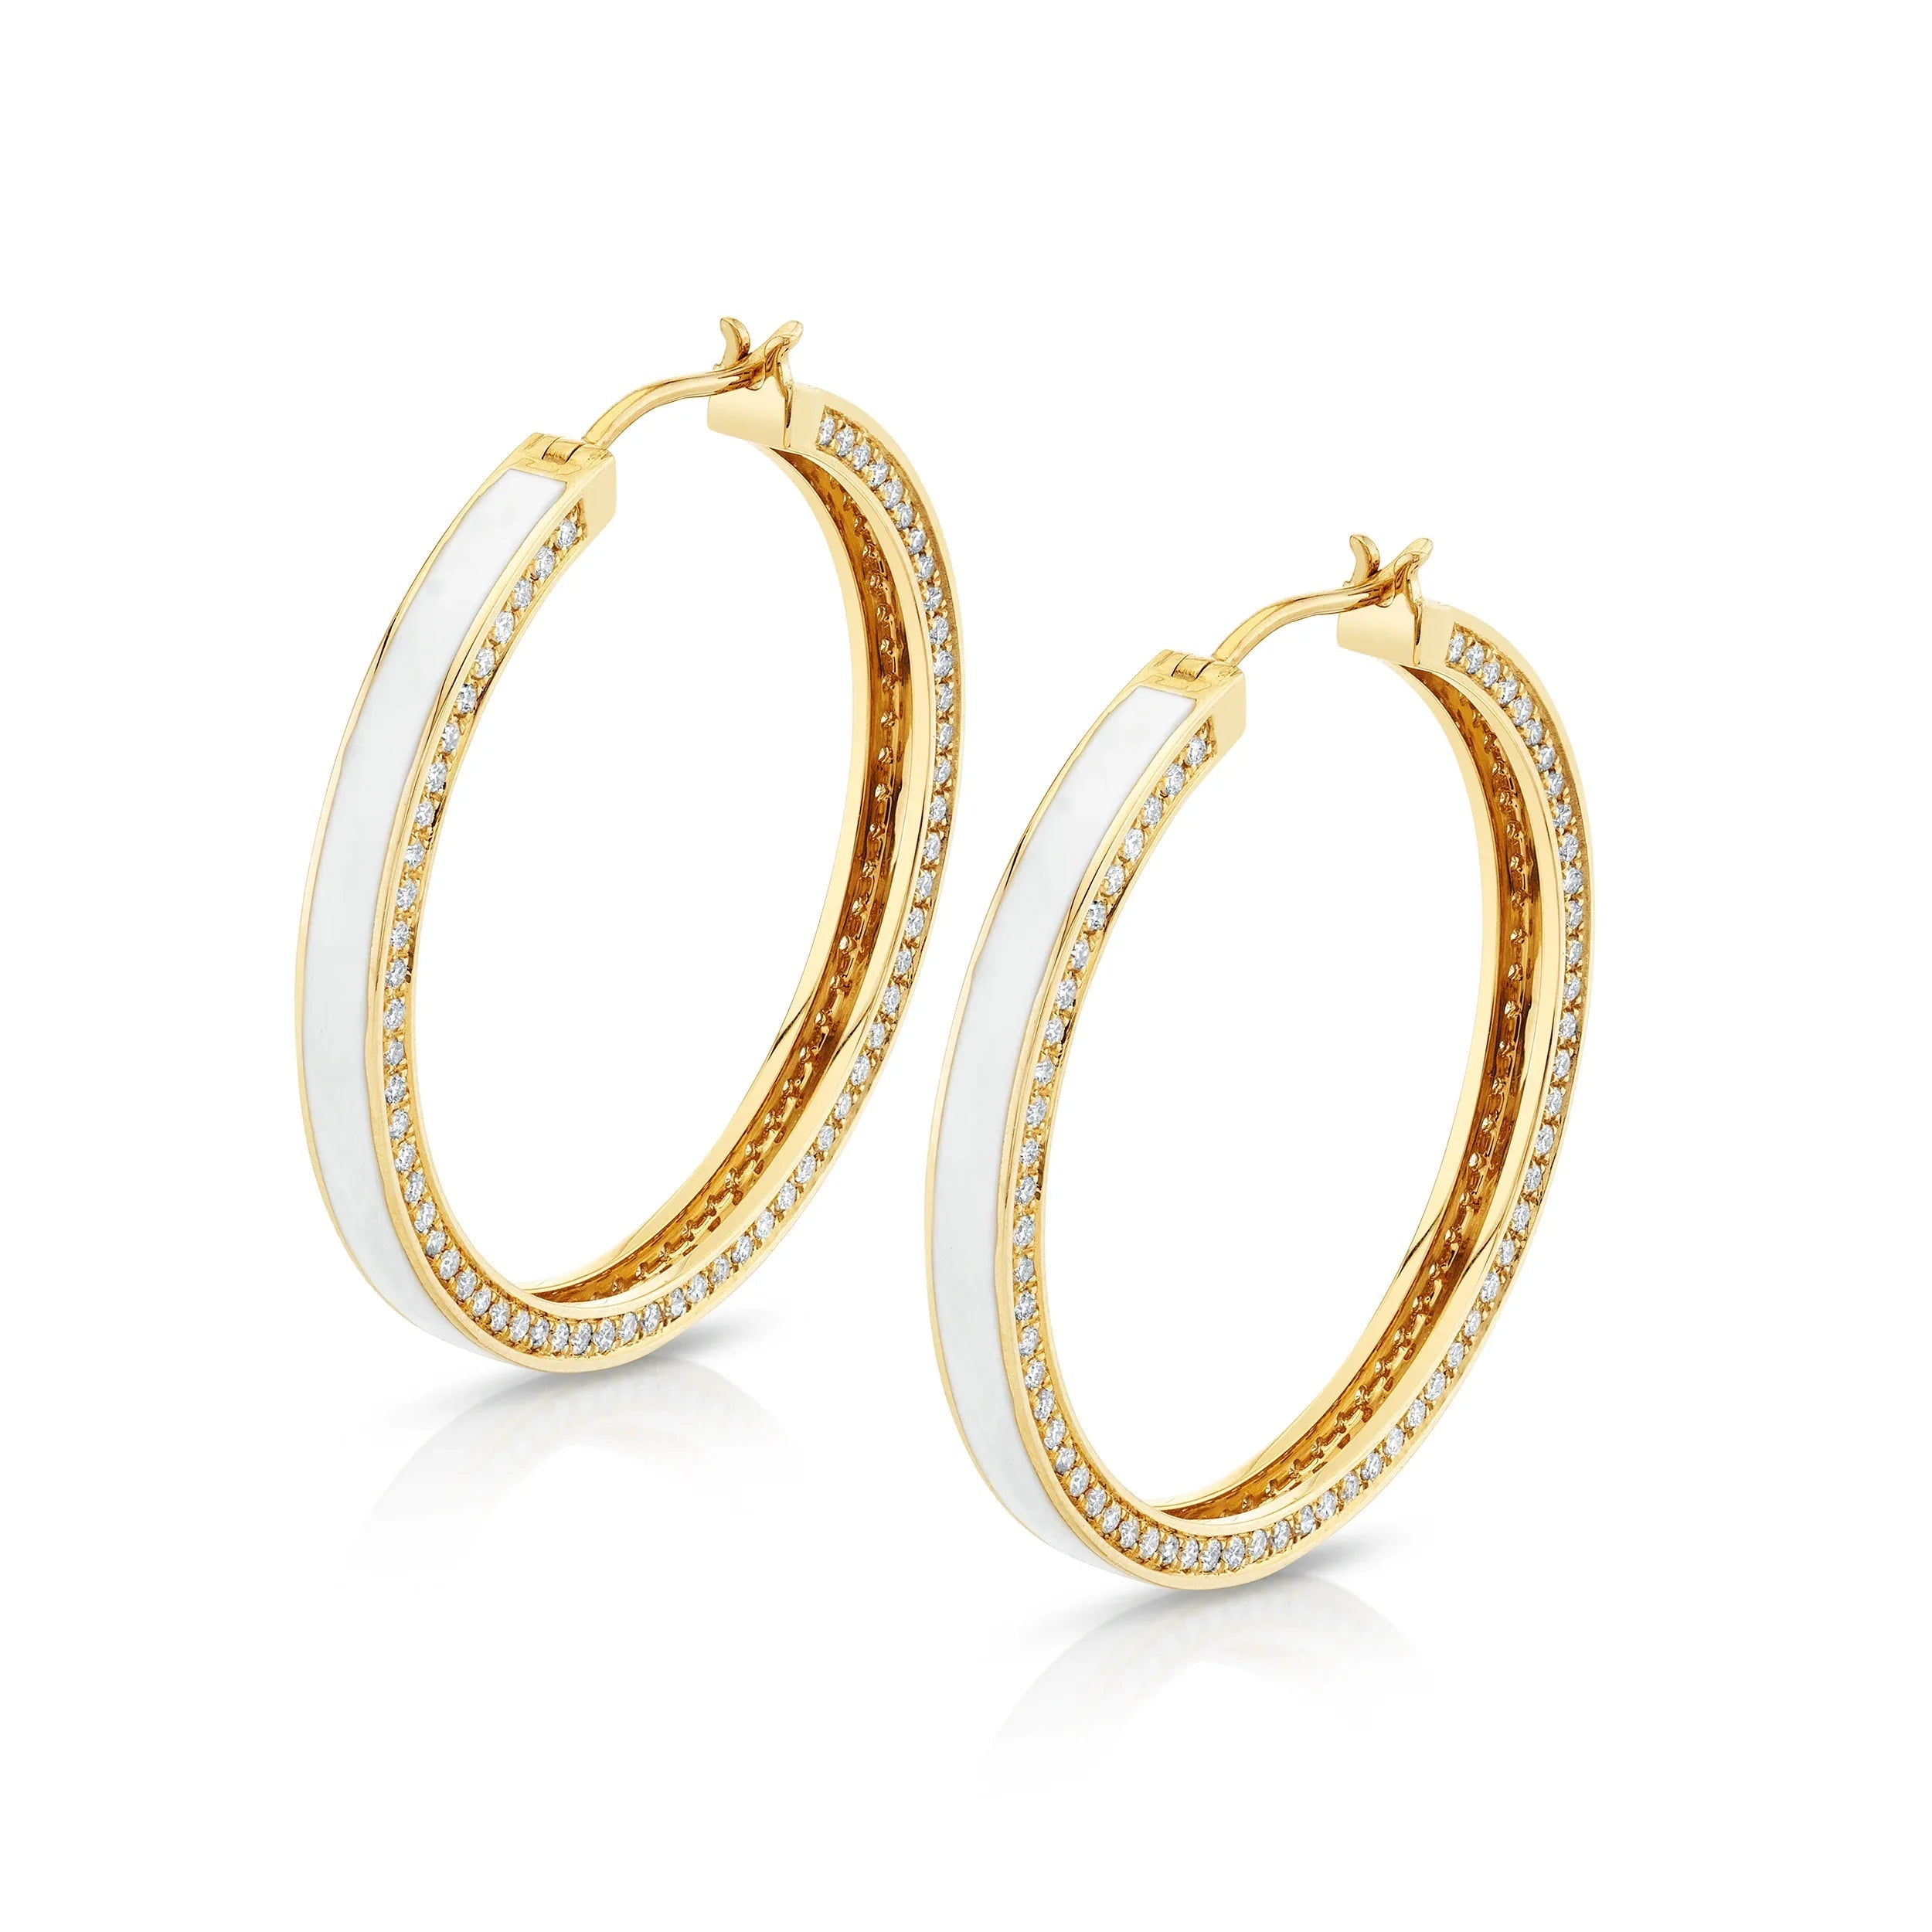 MICHAEL M Earrings 14k Yellow Gold / White White Chroma Pavé Edge Hoop Earrings ER481